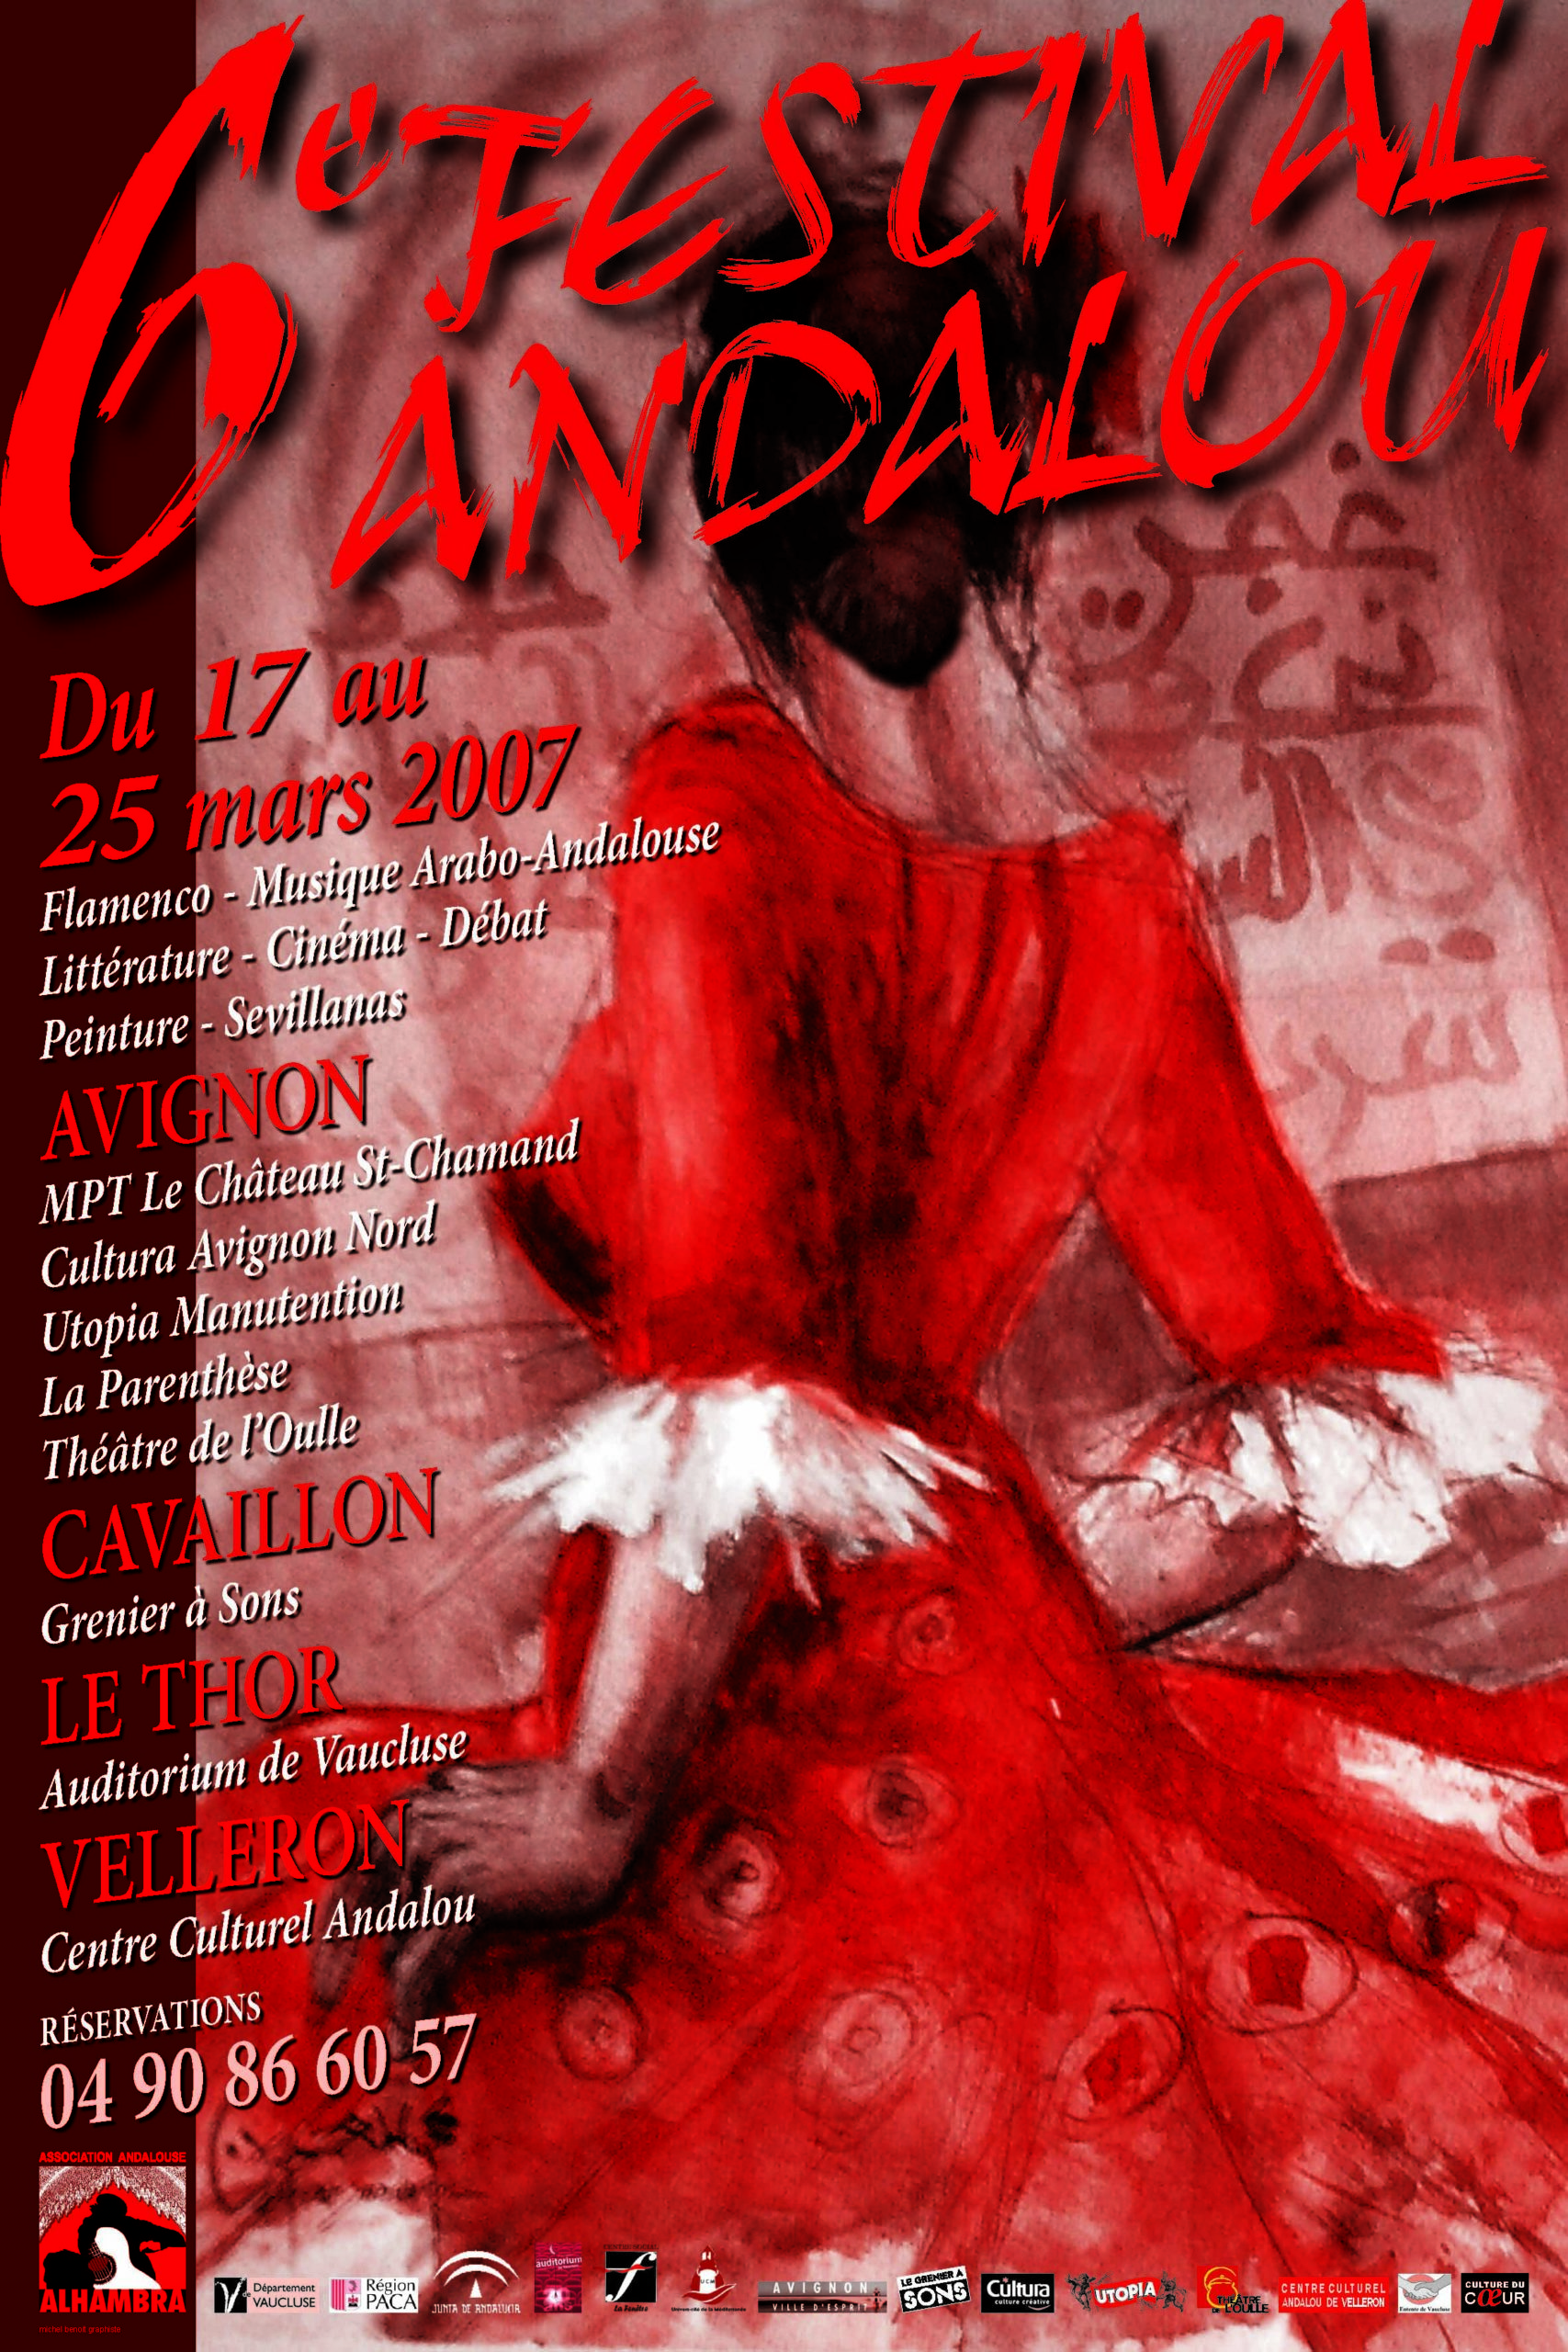 Festival Andalou - 6th edition